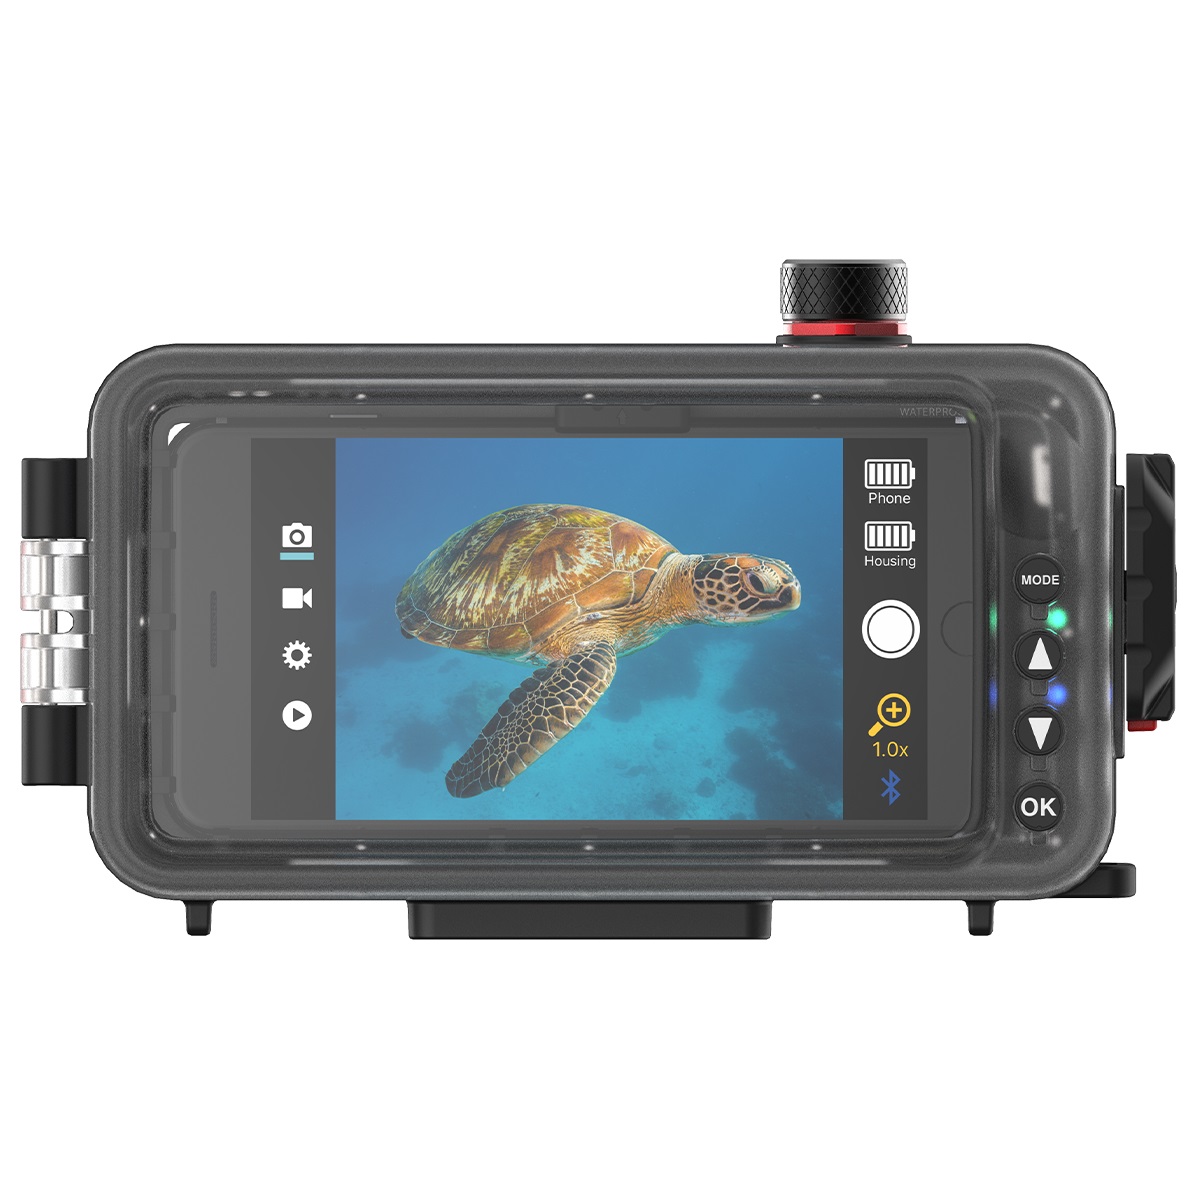 SeaLife SportDiver Unterwassergehäuse für iPhone / Android Smartphones